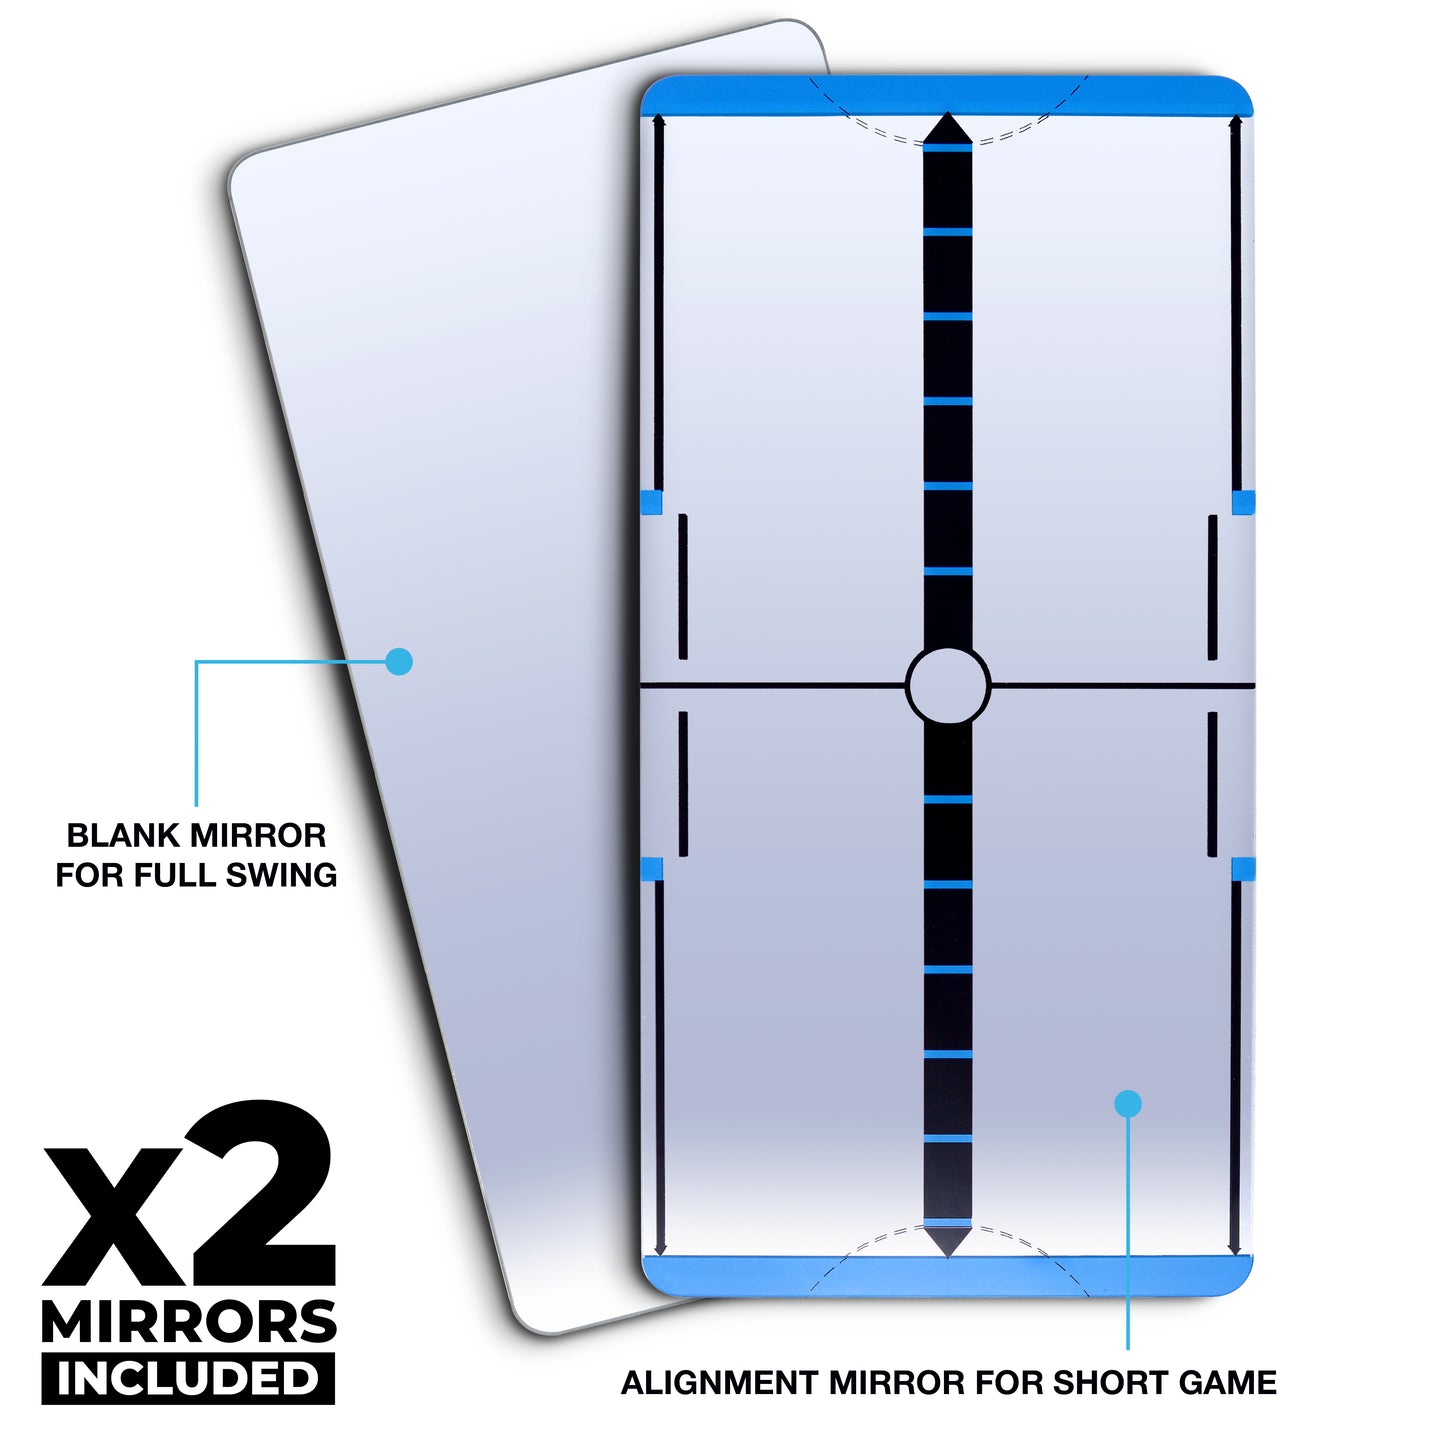 Mini-Max Training Mirrors